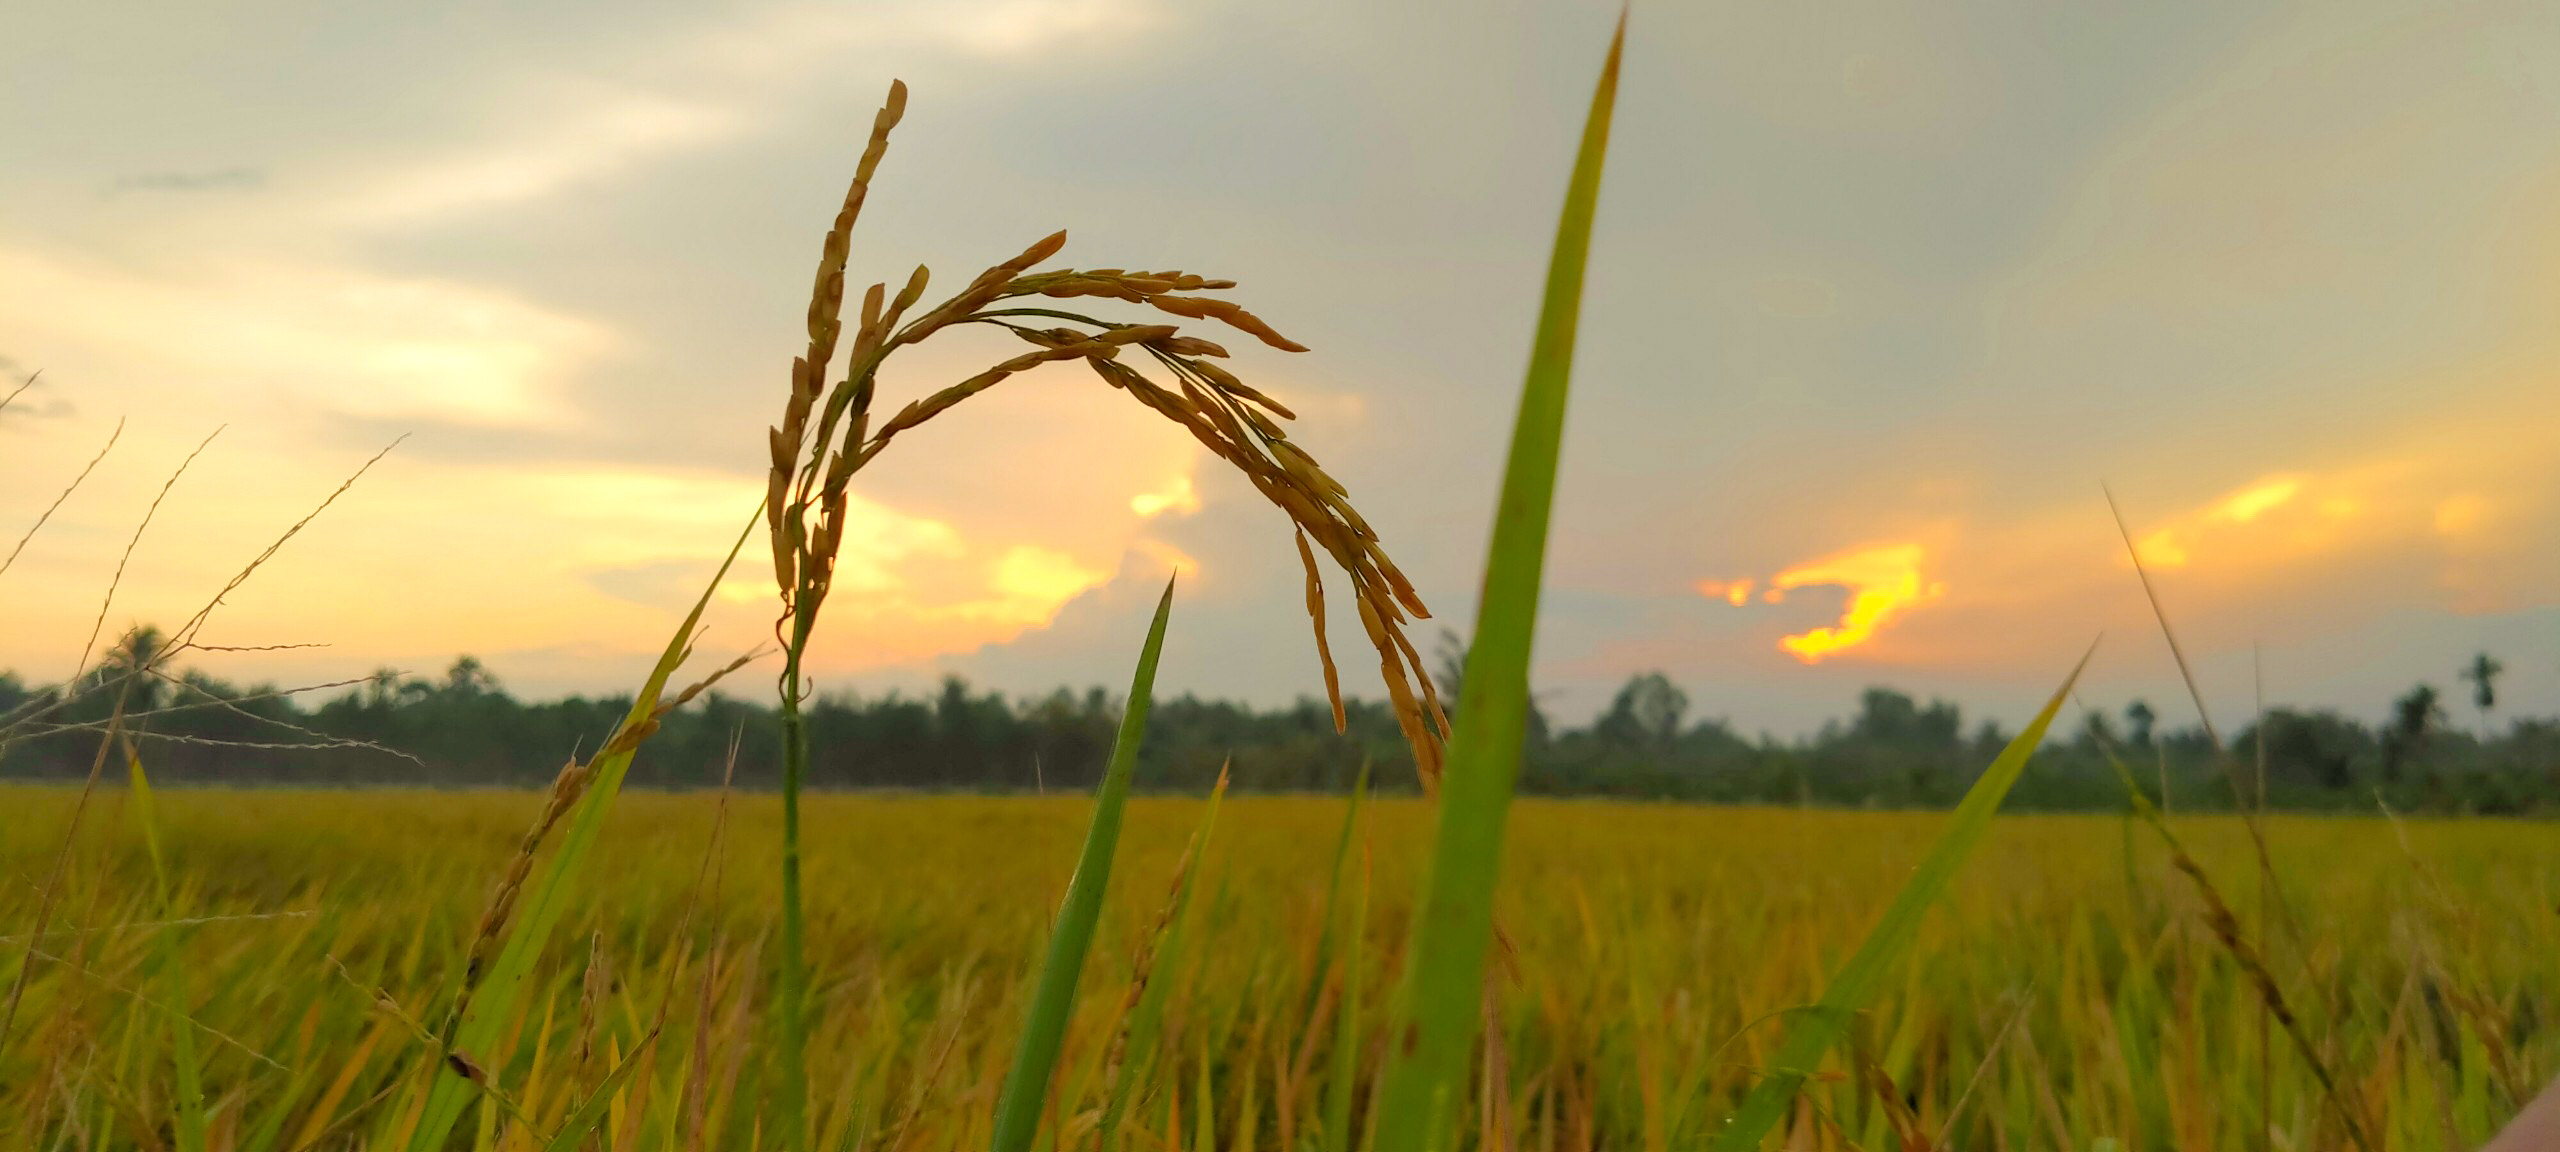 Nếu bạn muốn cảm nhận sự giản đơn và thanh bình của vùng quê Việt Nam, hãy tìm đến một cánh đồng quê đầy lúa mì. Hình ảnh này sẽ khiến bạn cảm thấy như đang quay lại thời điểm của sự thật và hiện thực.